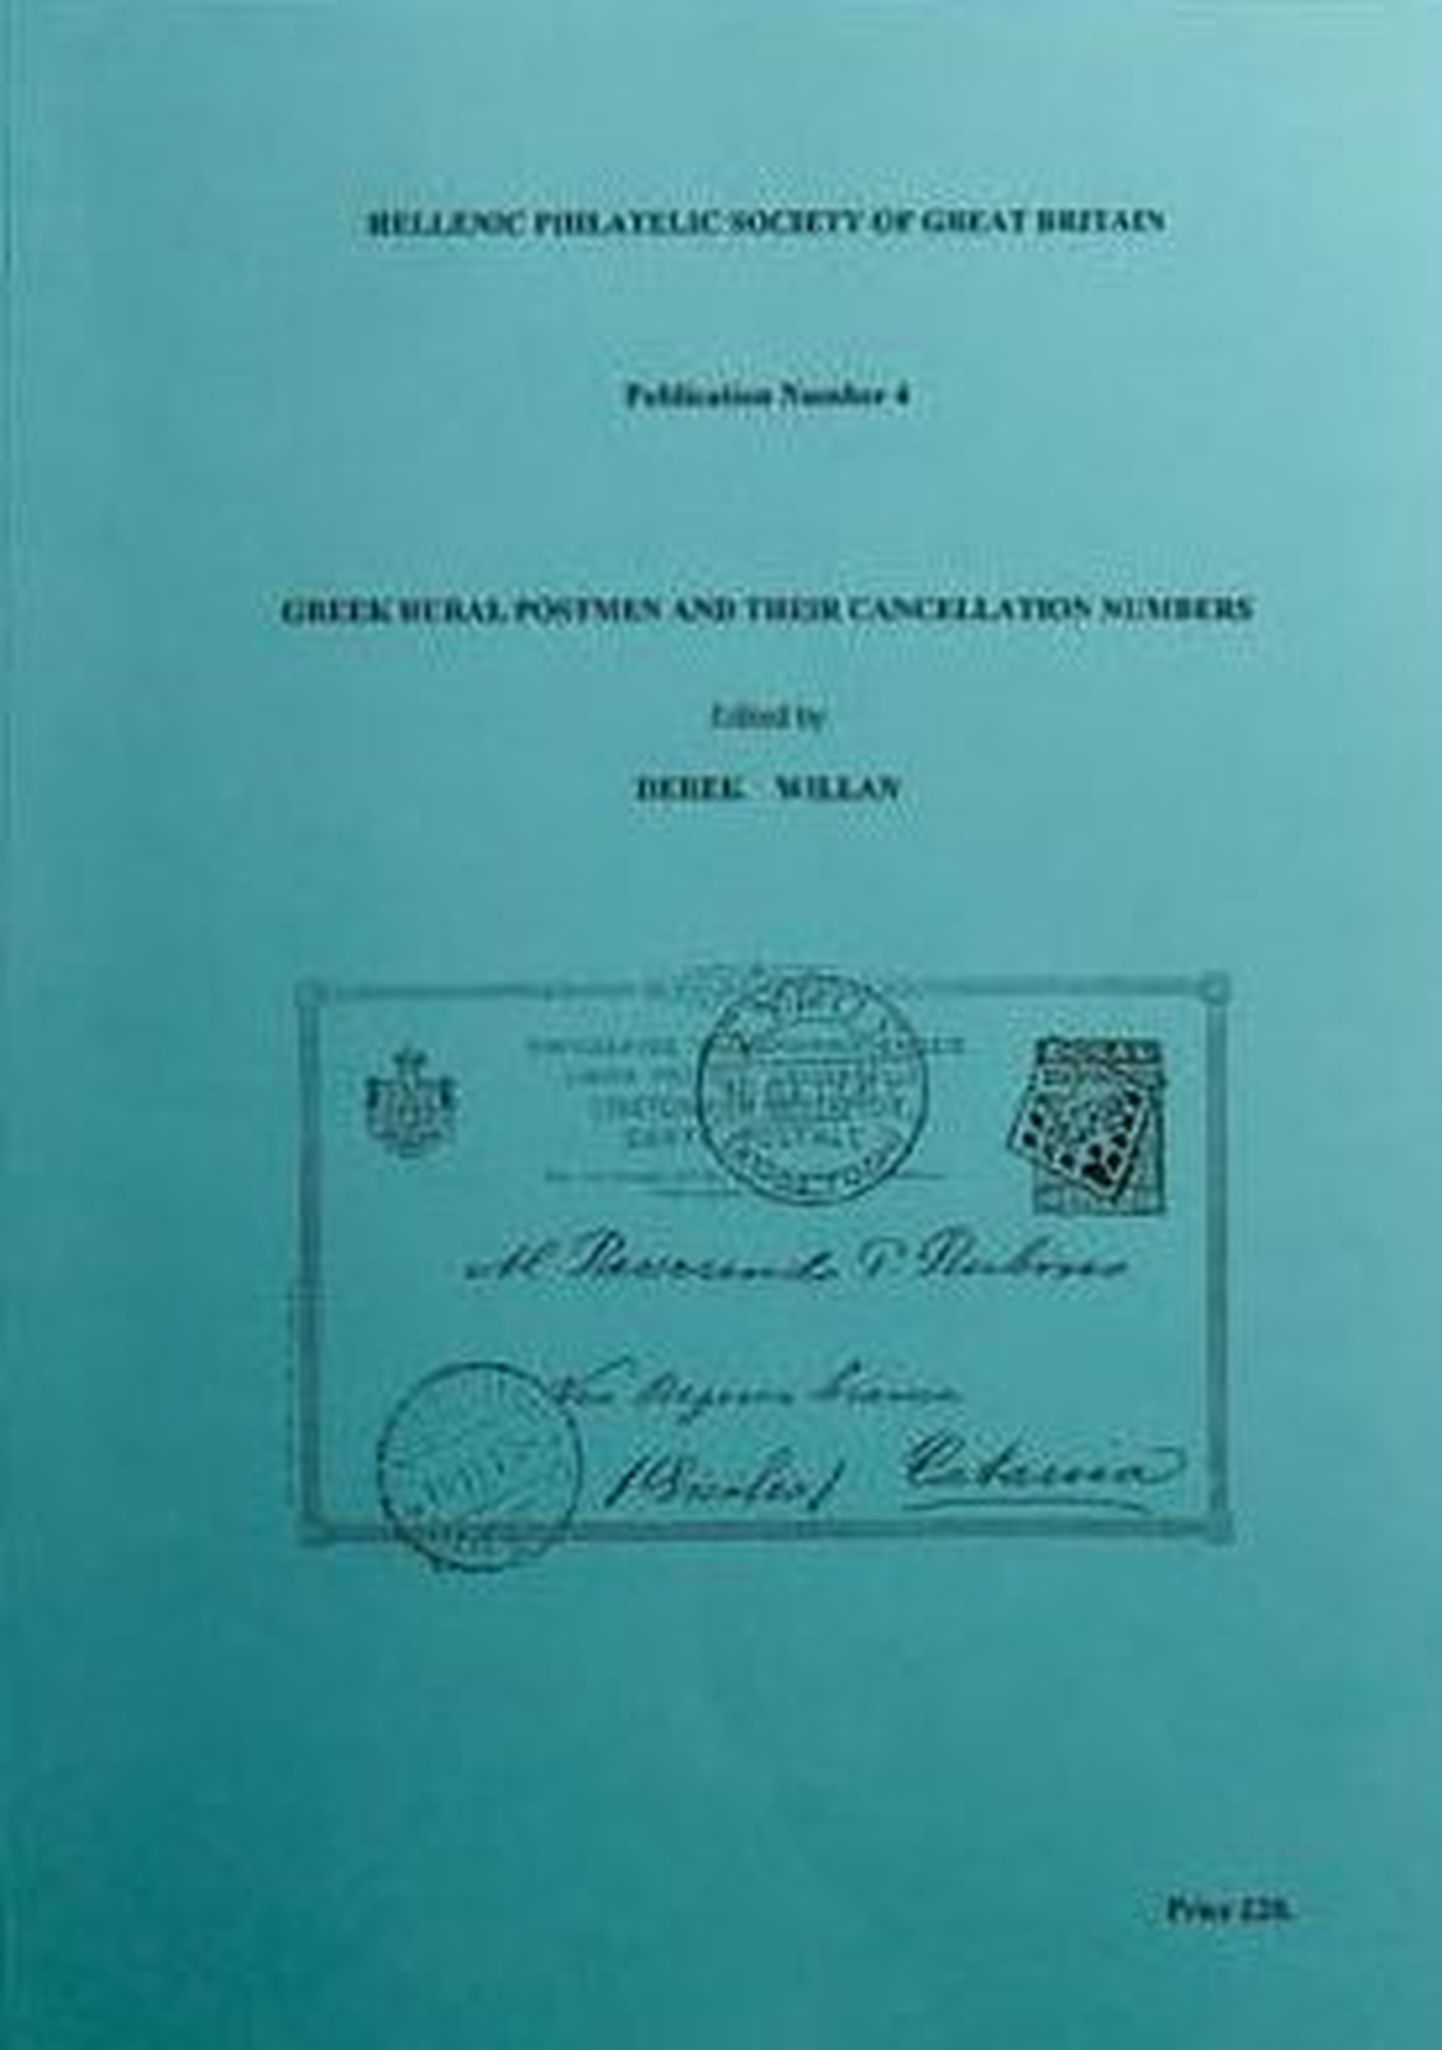 Derek Willani poolt koostatud «Greek Rural Postmen and Their Cancellation Numbers» esikaas